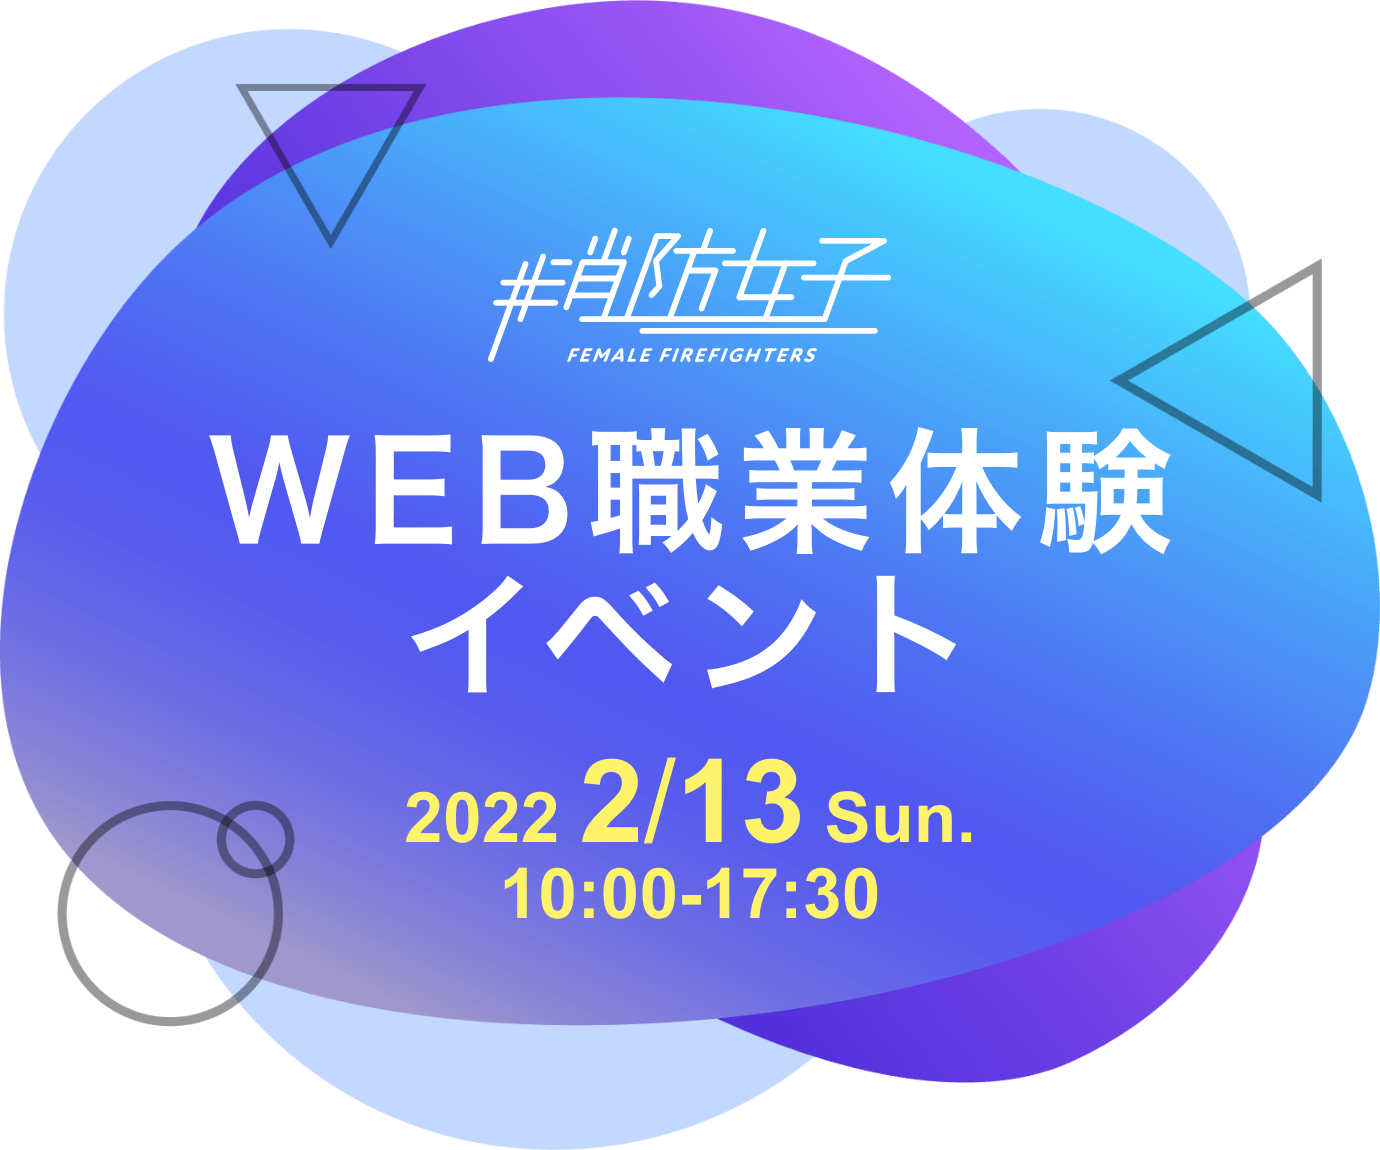 WEB職業体験イベント 2022 2/13 Sun. 10:00-17:30